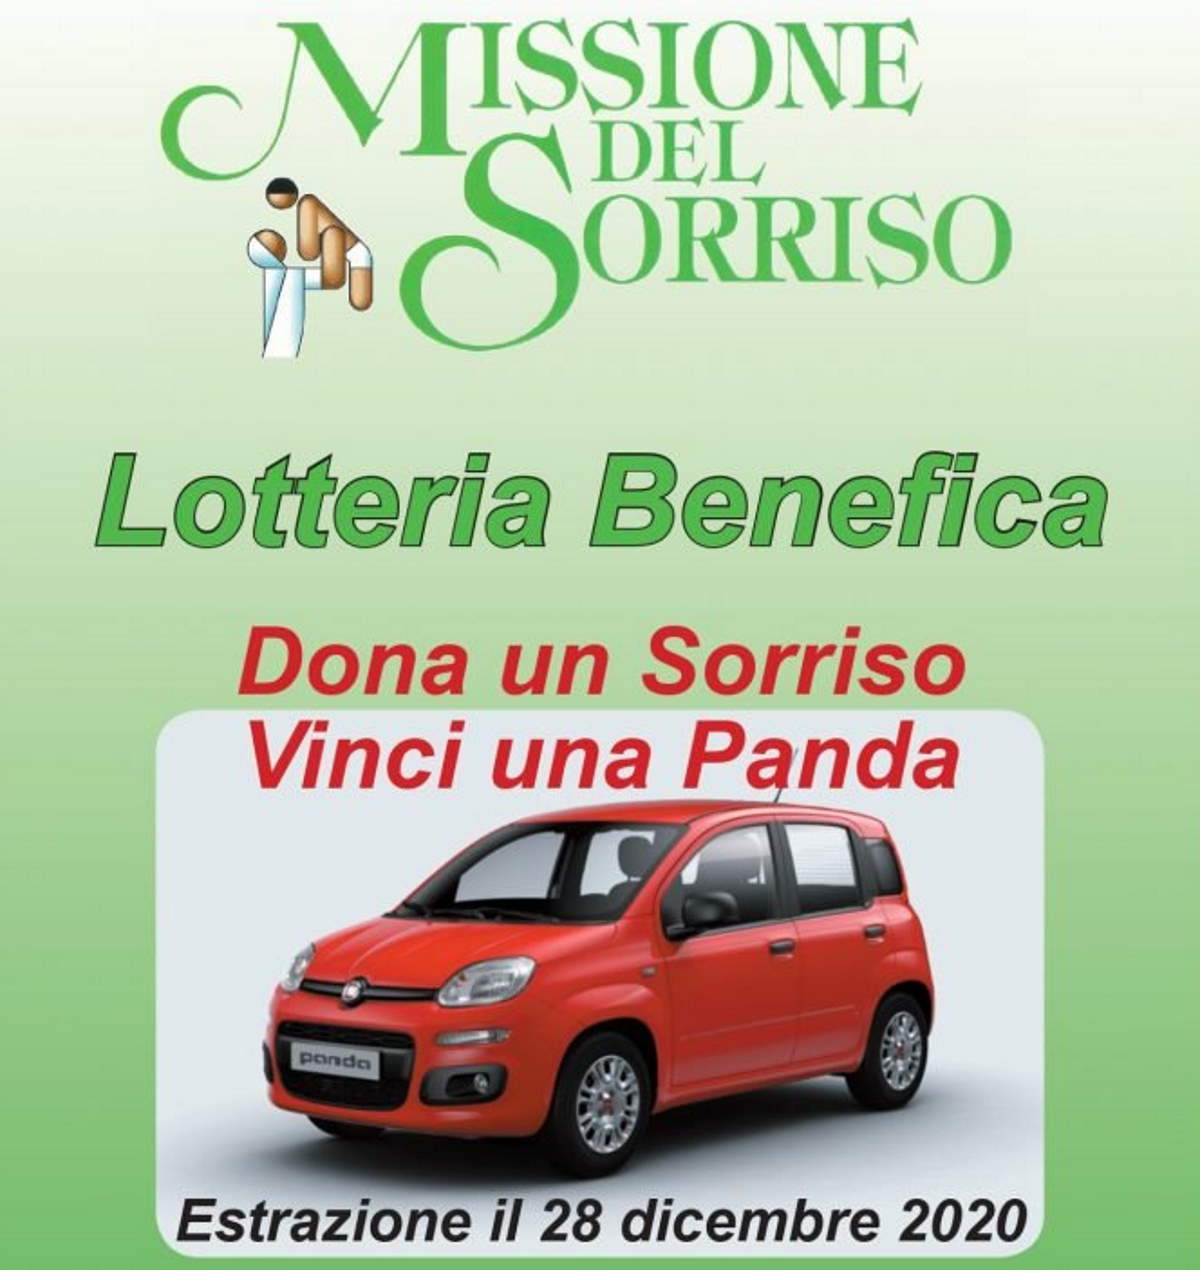 «Dona un Sorriso, vinci una Panda», lotteria benefica dell'associazione Dona Un Sorriso